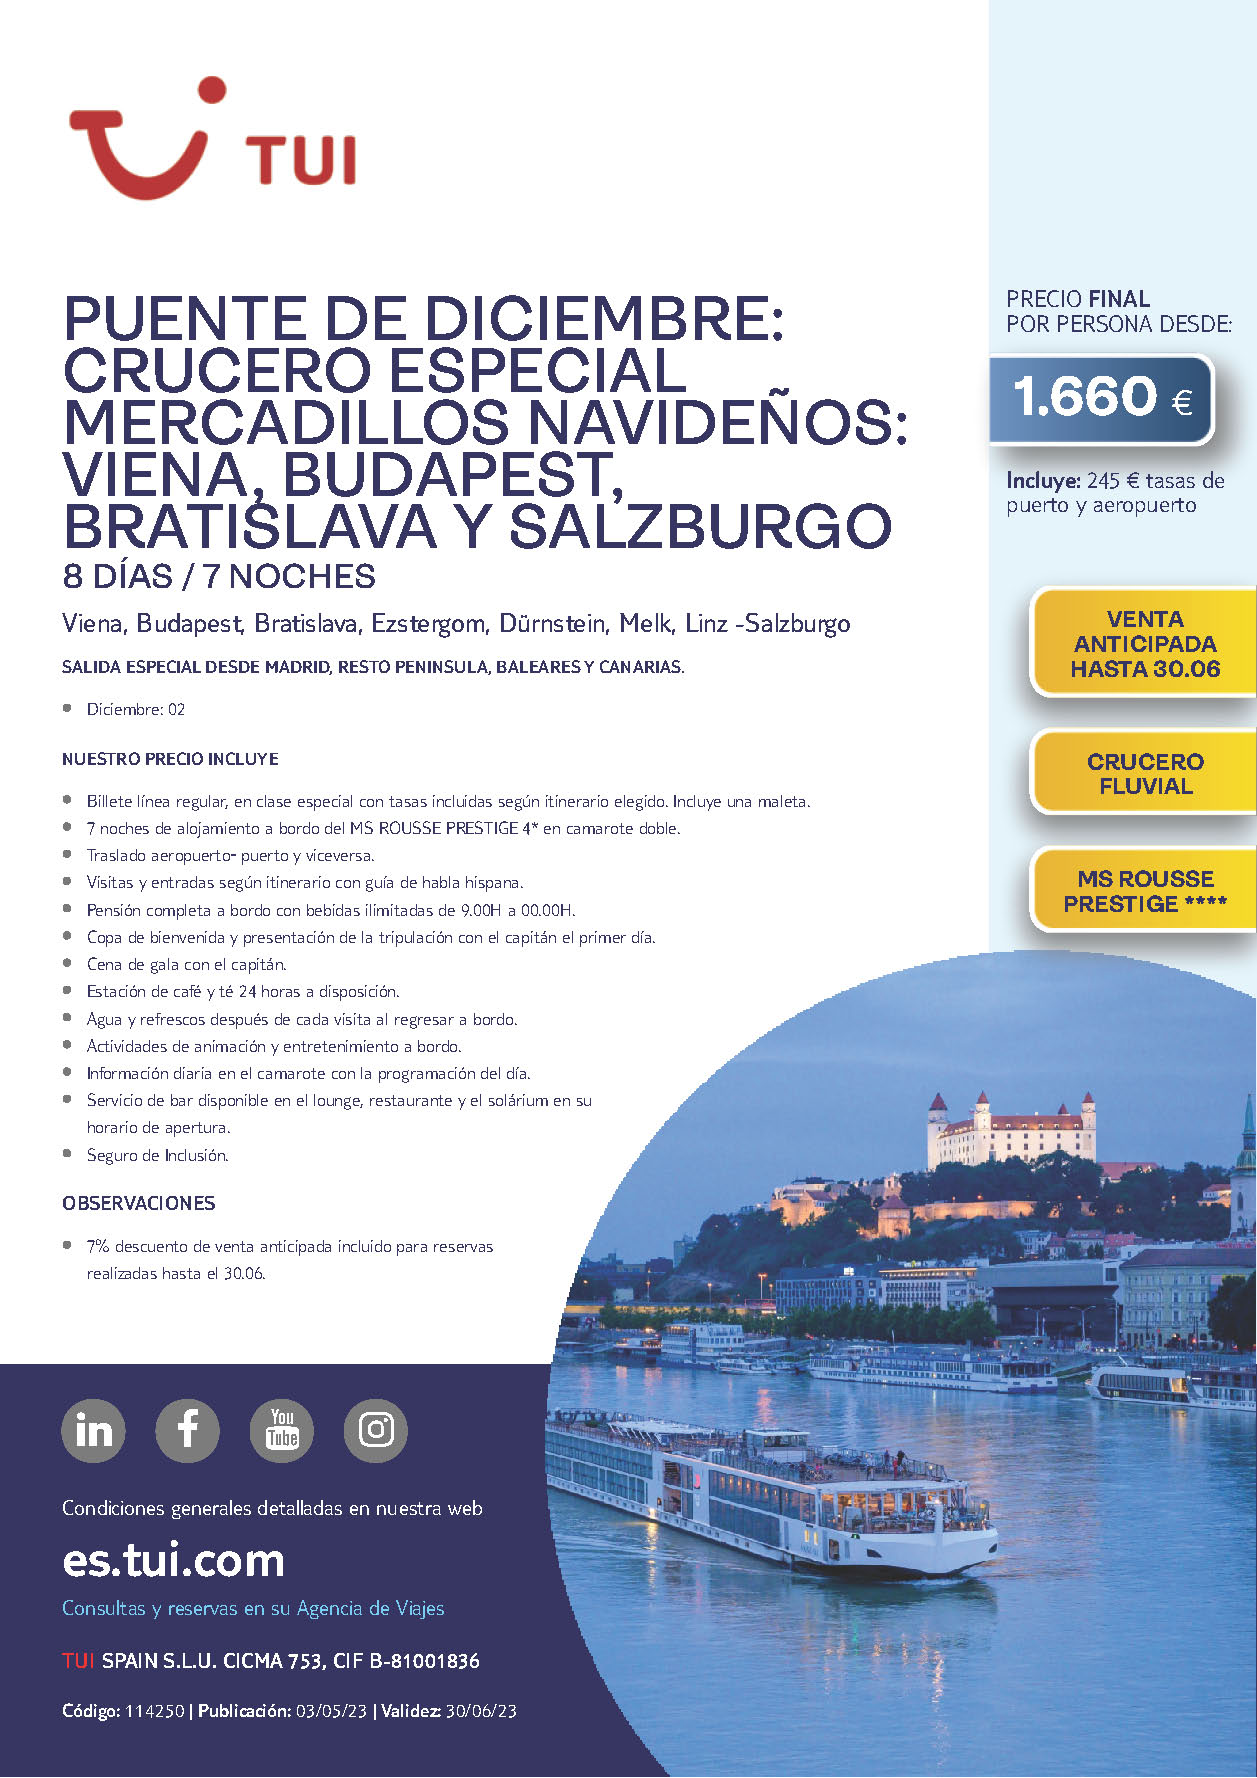 Oferta TUI Puente de Diciembre 2023 crucero Danubio Viena Bratislava Budapest Salzburgo 8 salidas desde Madrid Barcelona Valencia Baleares y Canarias